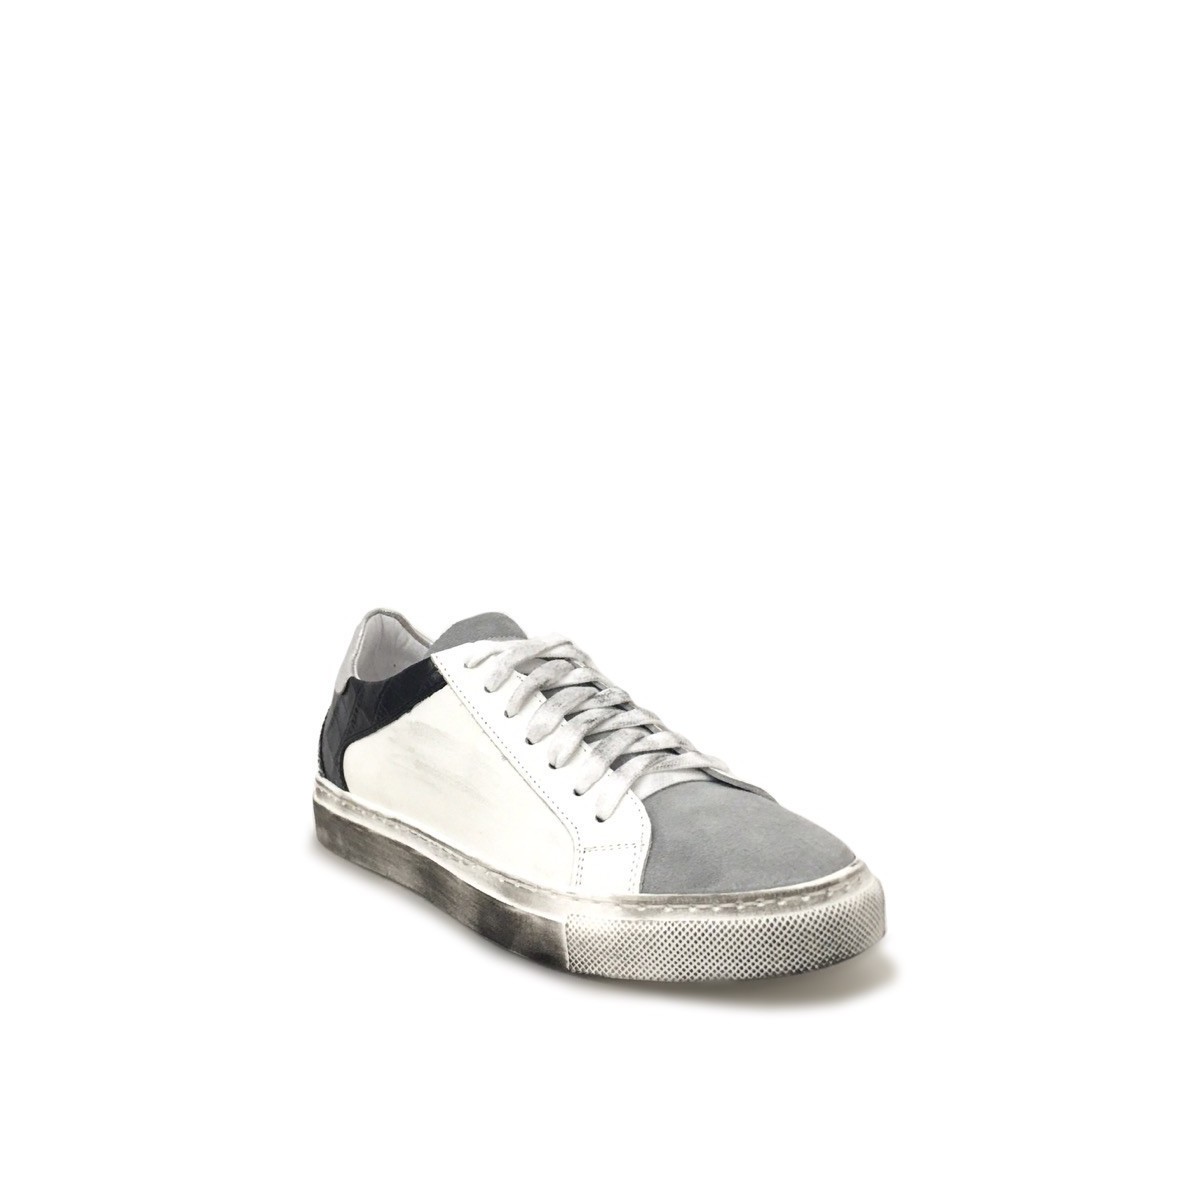 Sneakers cocco nero glitter argento